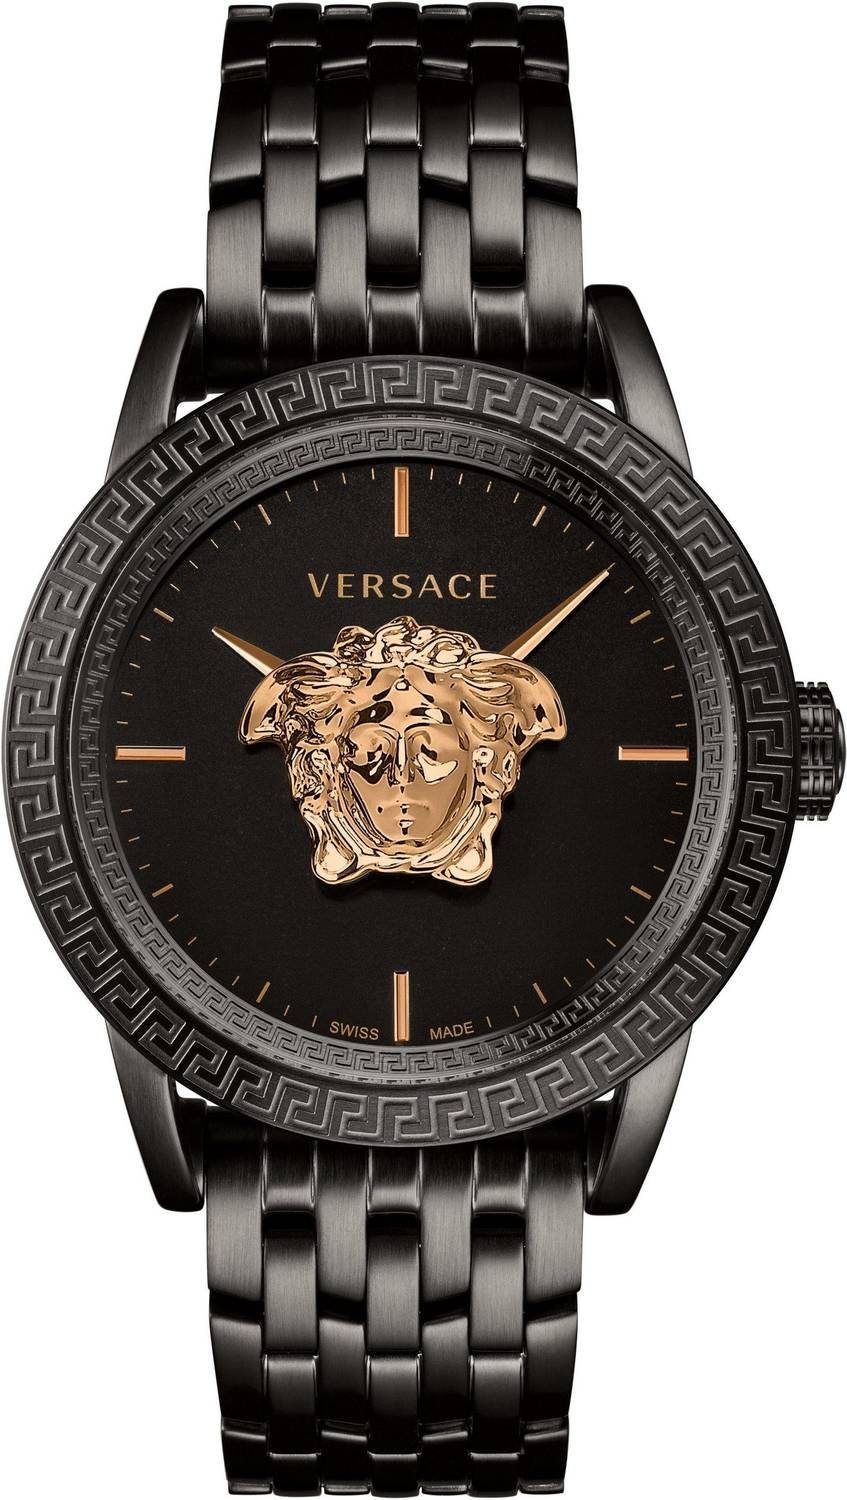 Versace Schweizer Uhr »Palazzo Empire« online kaufen | OTTO